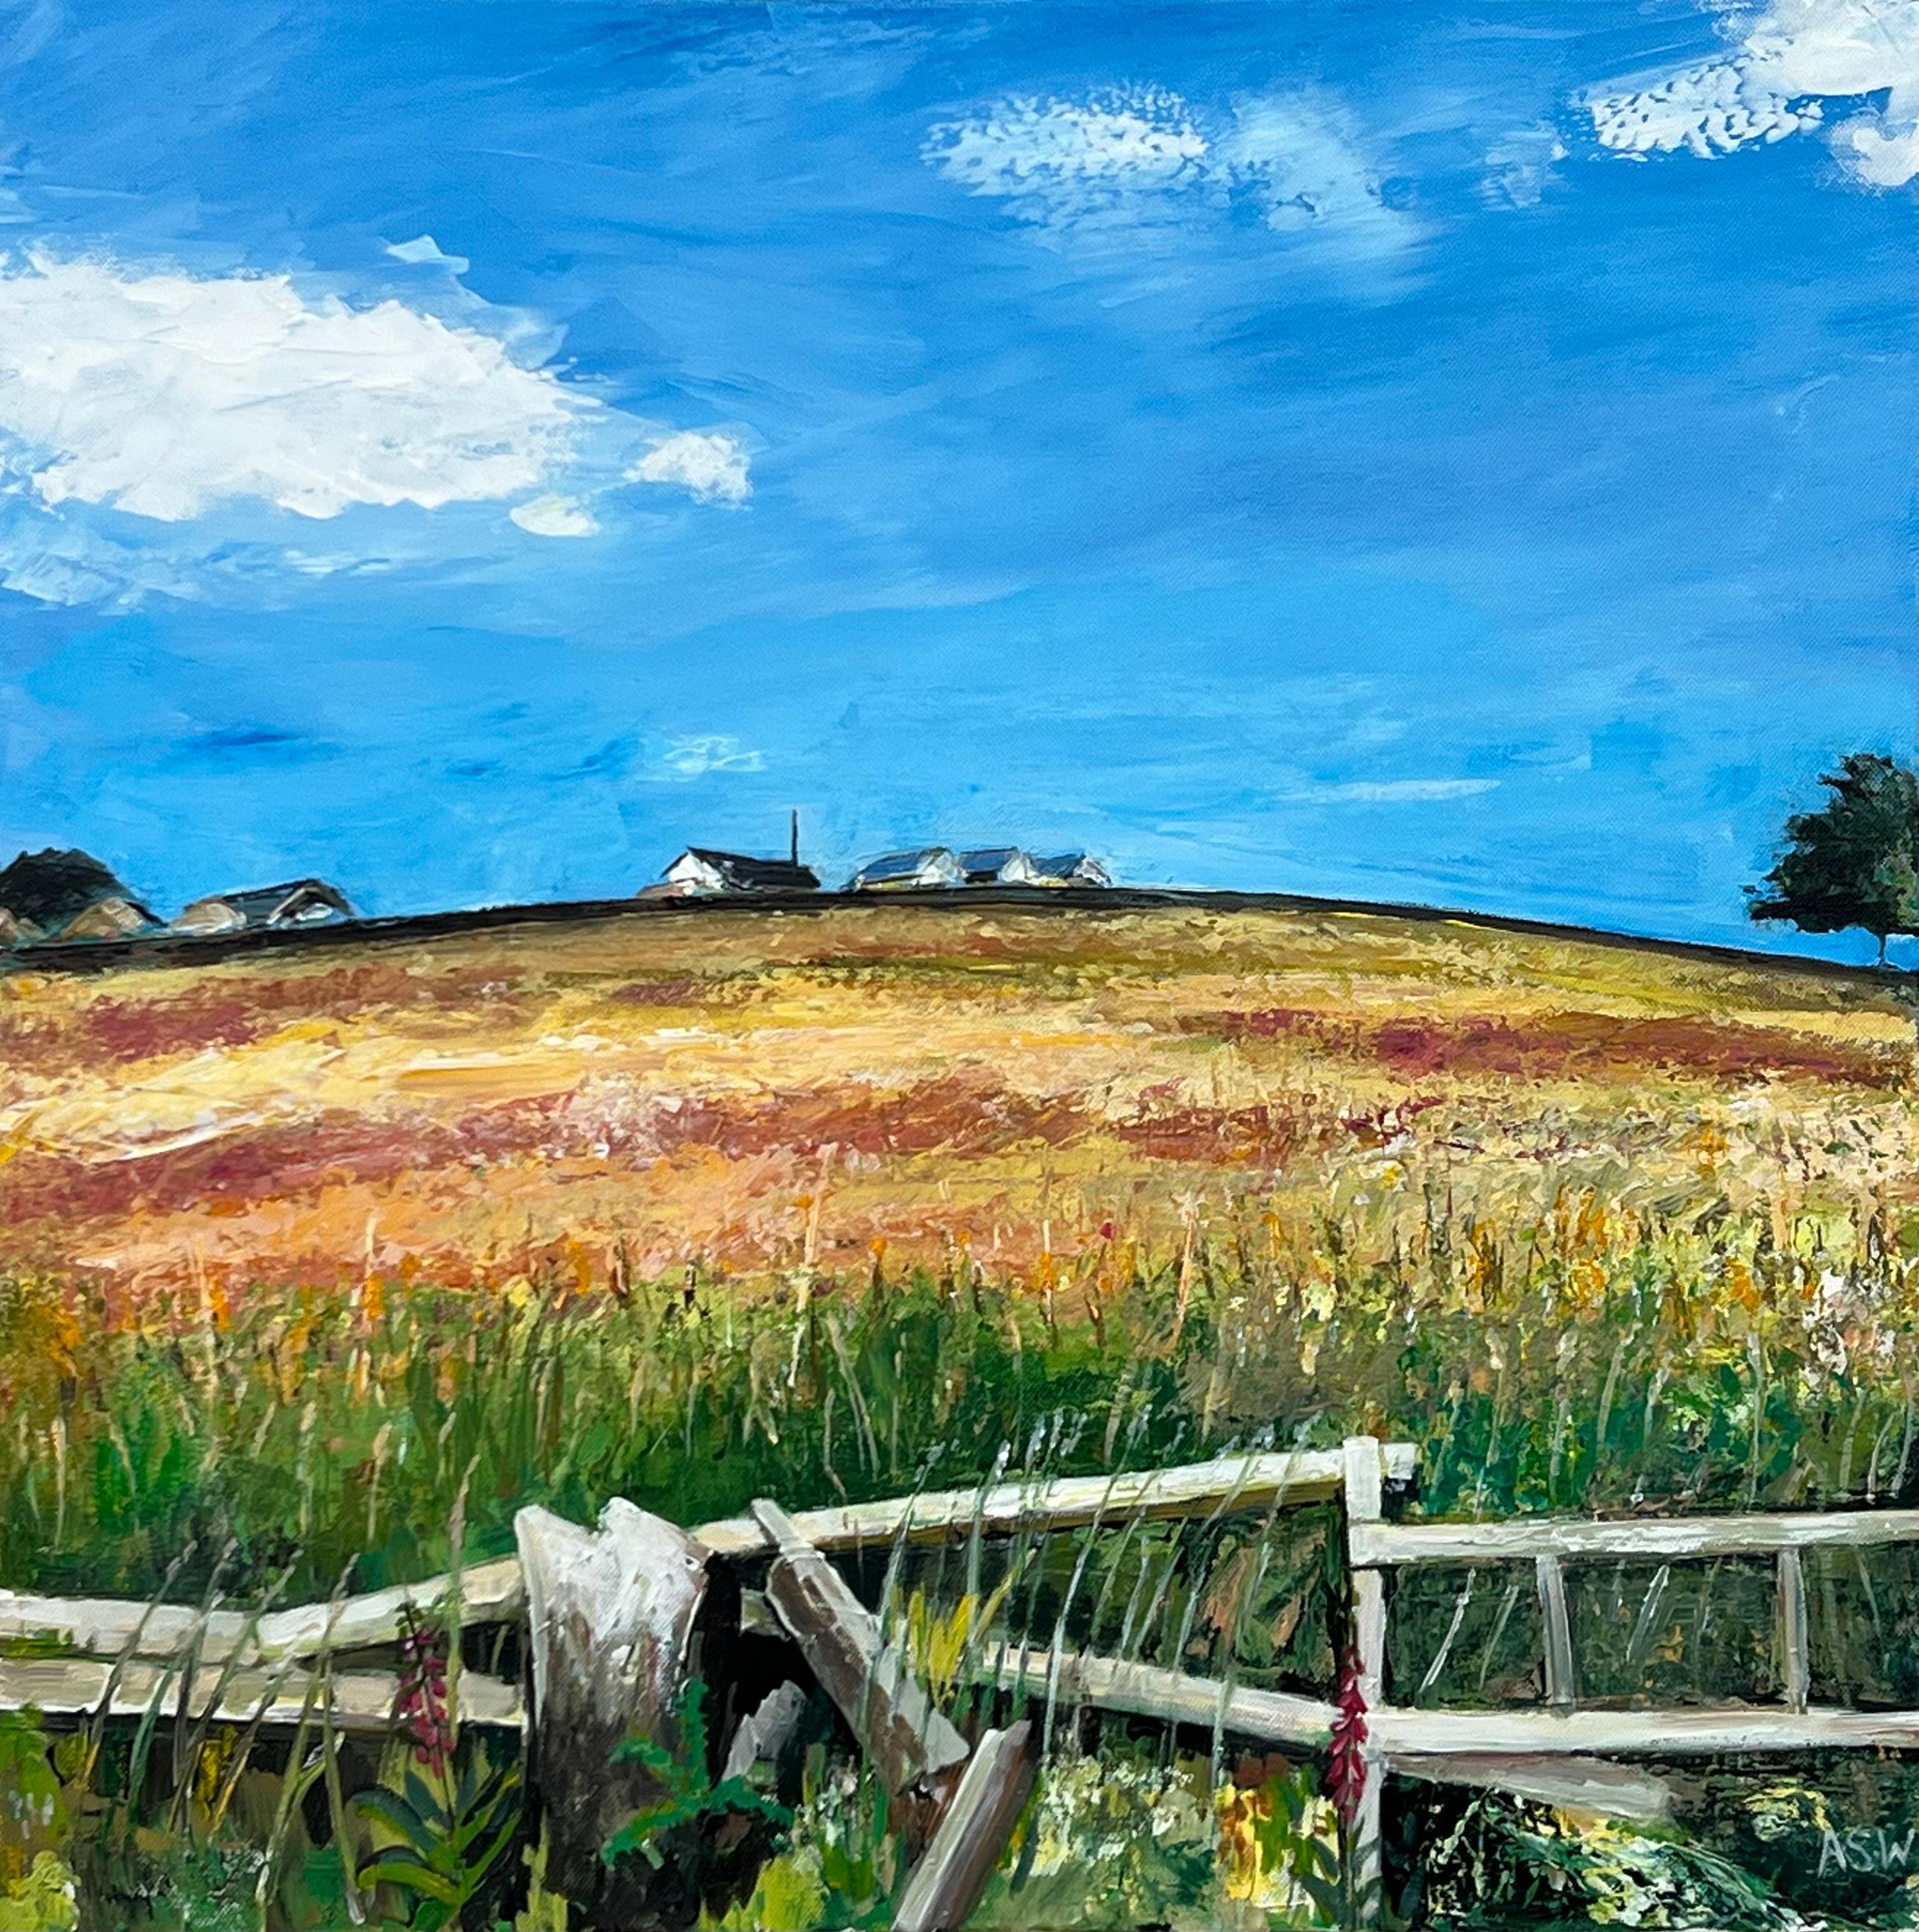 Gemälde der Lancashire Fields in English Countryside des britischen Landschaftsmalers